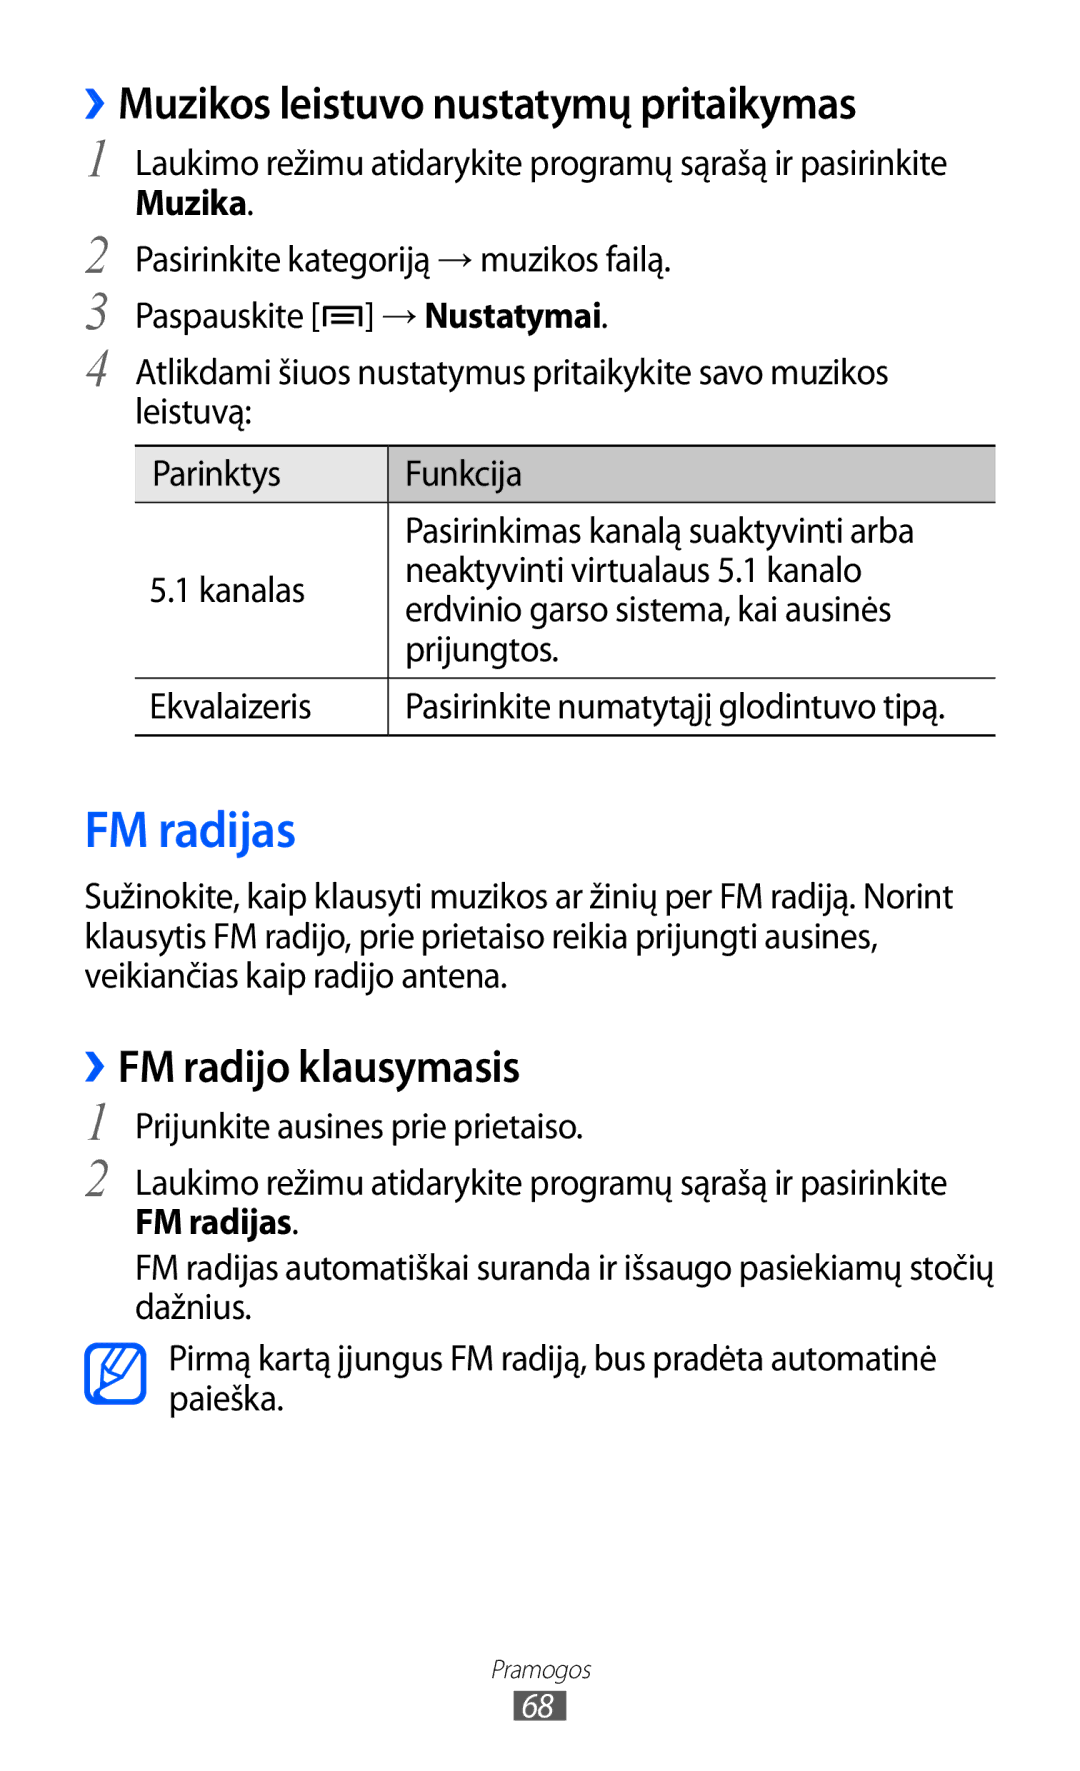 Samsung GT-S6102SKASEB manual FM radijas, ››Muzikos leistuvo nustatymų pritaikymas, ››FM radijo klausymasis 